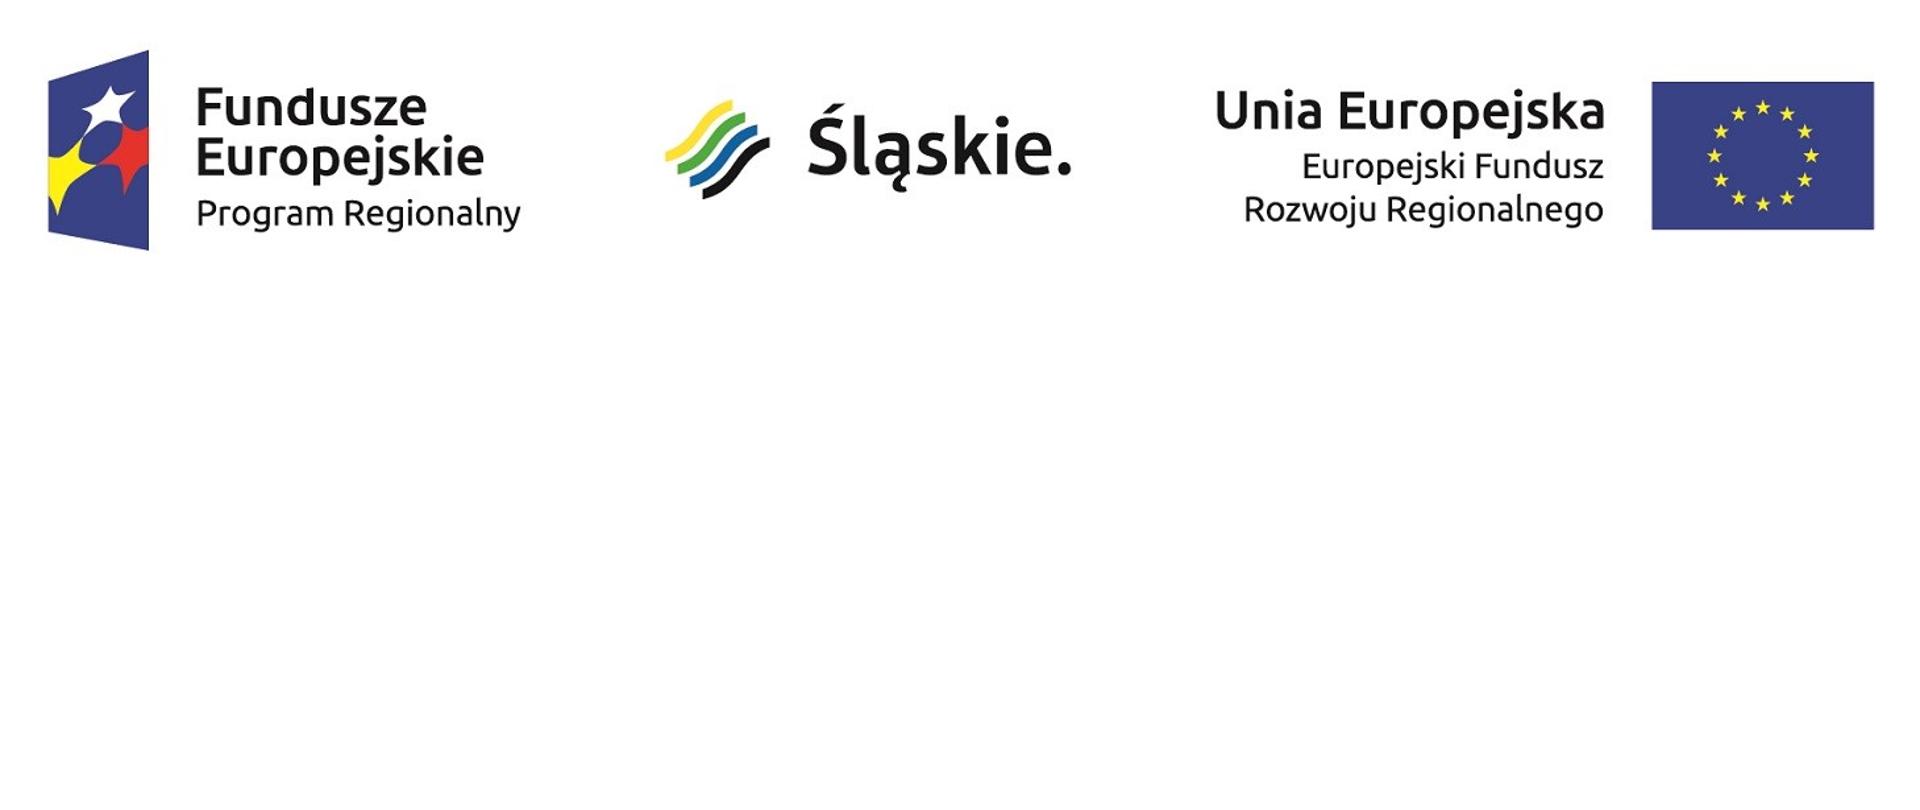 Od lewej krawędzi do prawej w poziomie loga: Fundusze Europejskie Program Regionalny, Śląskie, Unia Europejska Europejski Fundusz Rozwoju Regionalnego